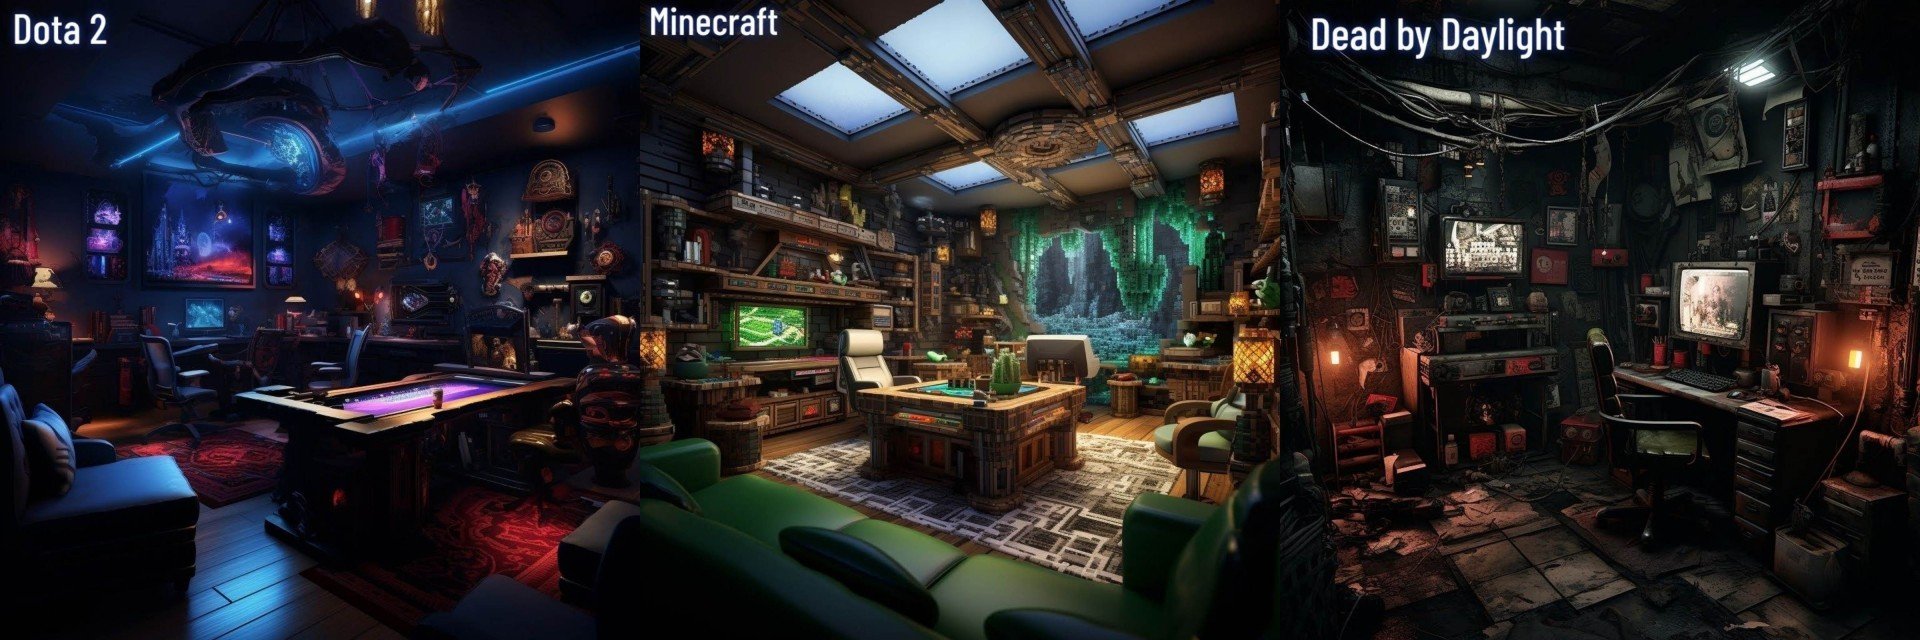 Нейросеть показала комнаты мечты геймеров в стиле GTA 5 Dota 2 и других игр